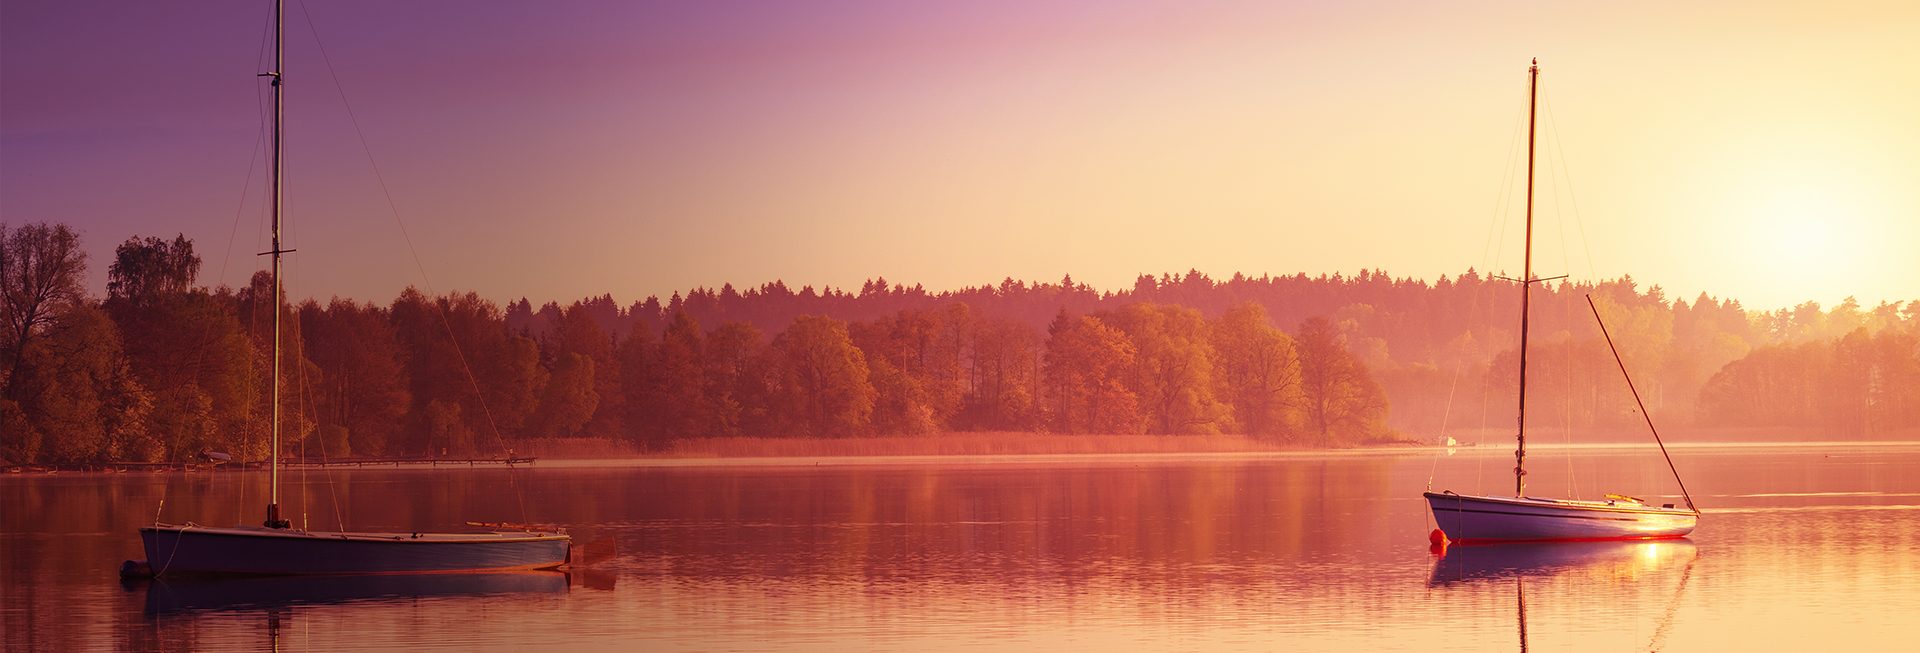 Zdjęcie przedstawia dwie łódki bez załogi dryfujące na jeziorze w czasie zachodu słońca chowającego się za linią drzew.